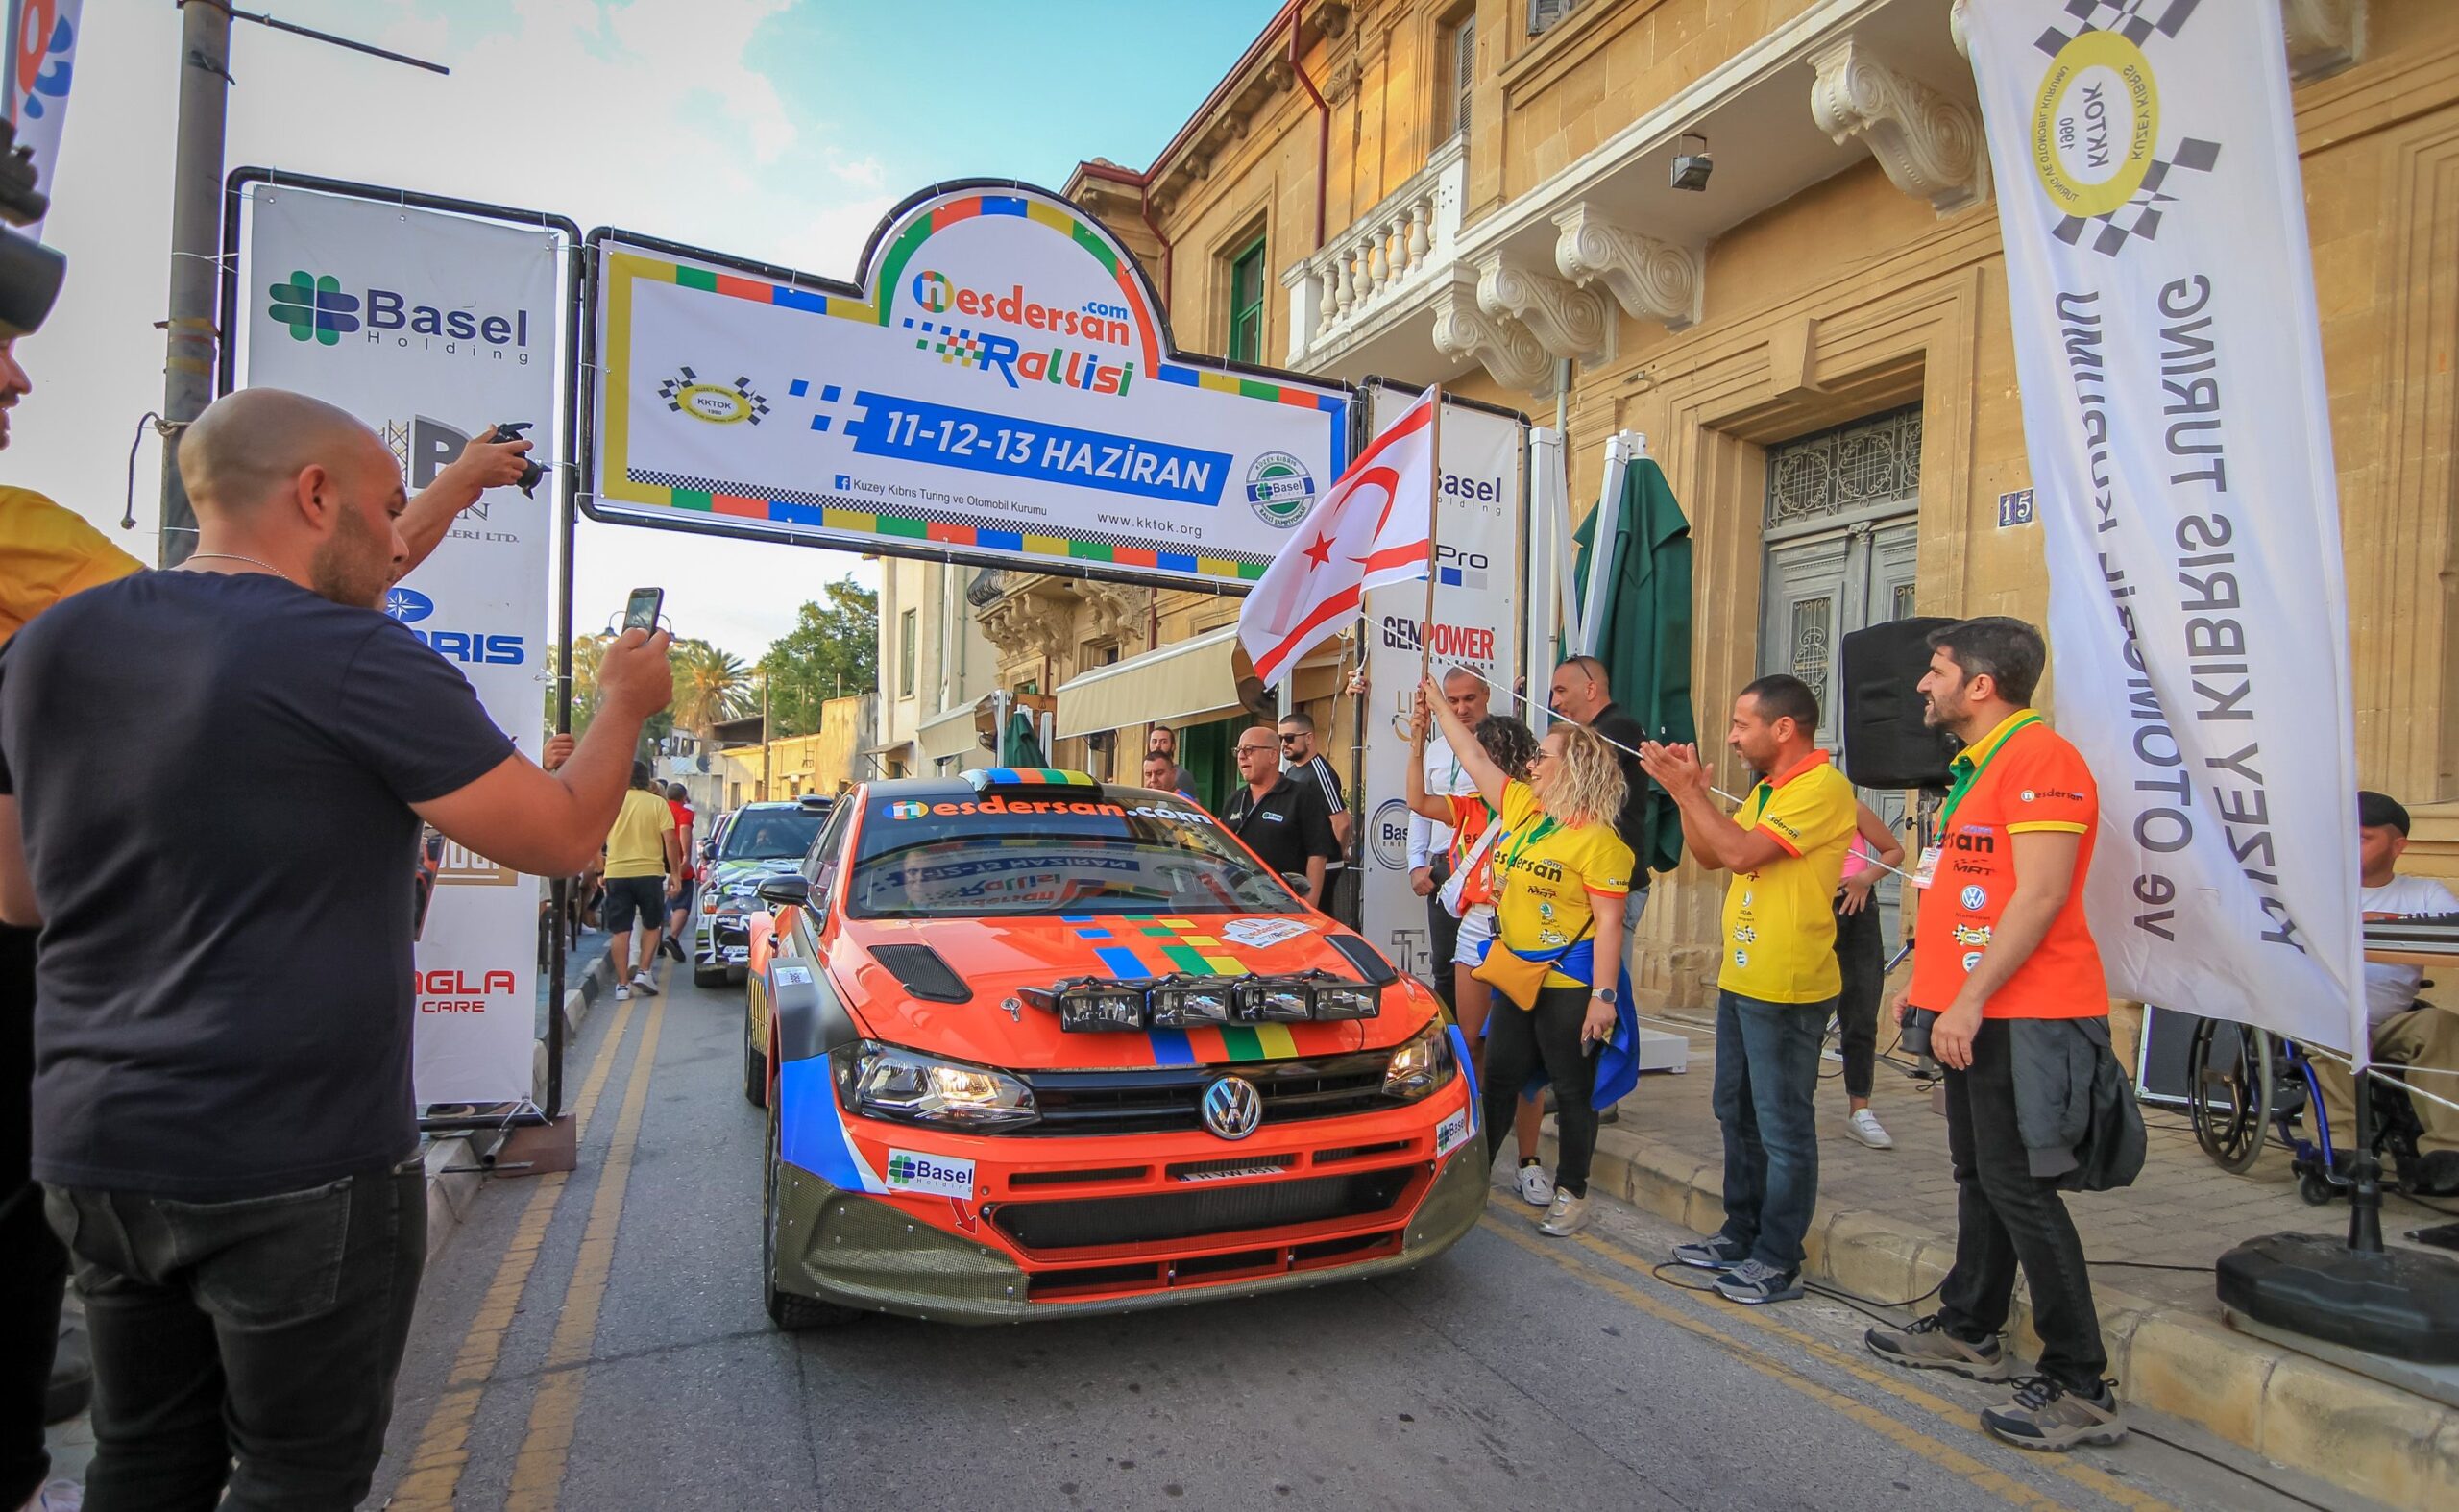 Kuzey Kıbrıs Turing ve Otomobil Kurumu’nun organize ettiği Basel Holding 2021 Ralli Şampiyonası’nın ikinci yarışı, “Nesdersan.com Rallisi”